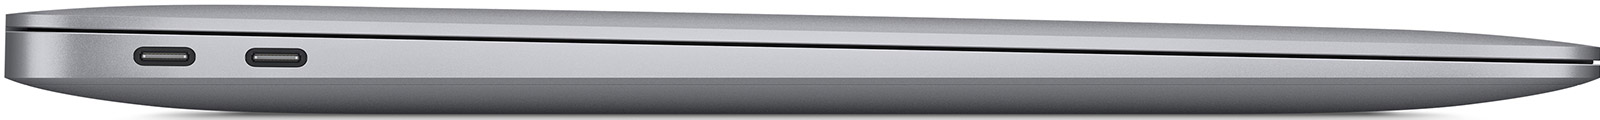 Apple-MacBook-Air-13-3-M1-8-Core-8-GB-512-GB-8-Core-Grafik-Space-Grau-CH-05.jpg